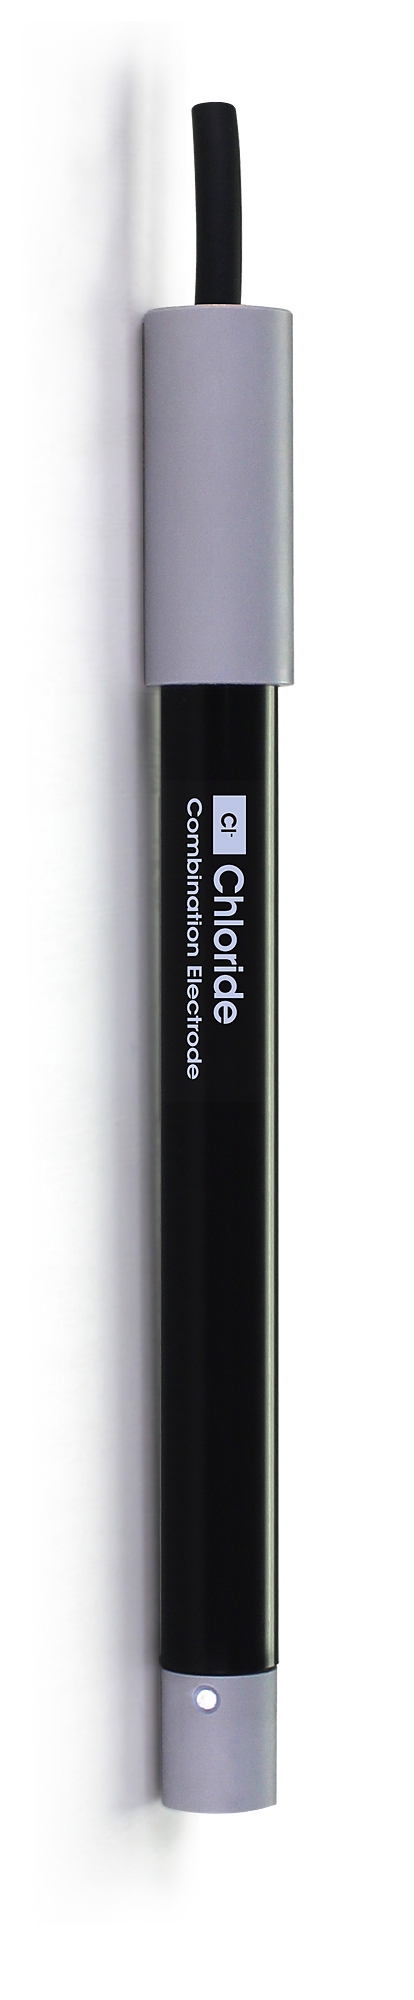 CS6210Cl A Chloride Ion Selective Electrode sensor